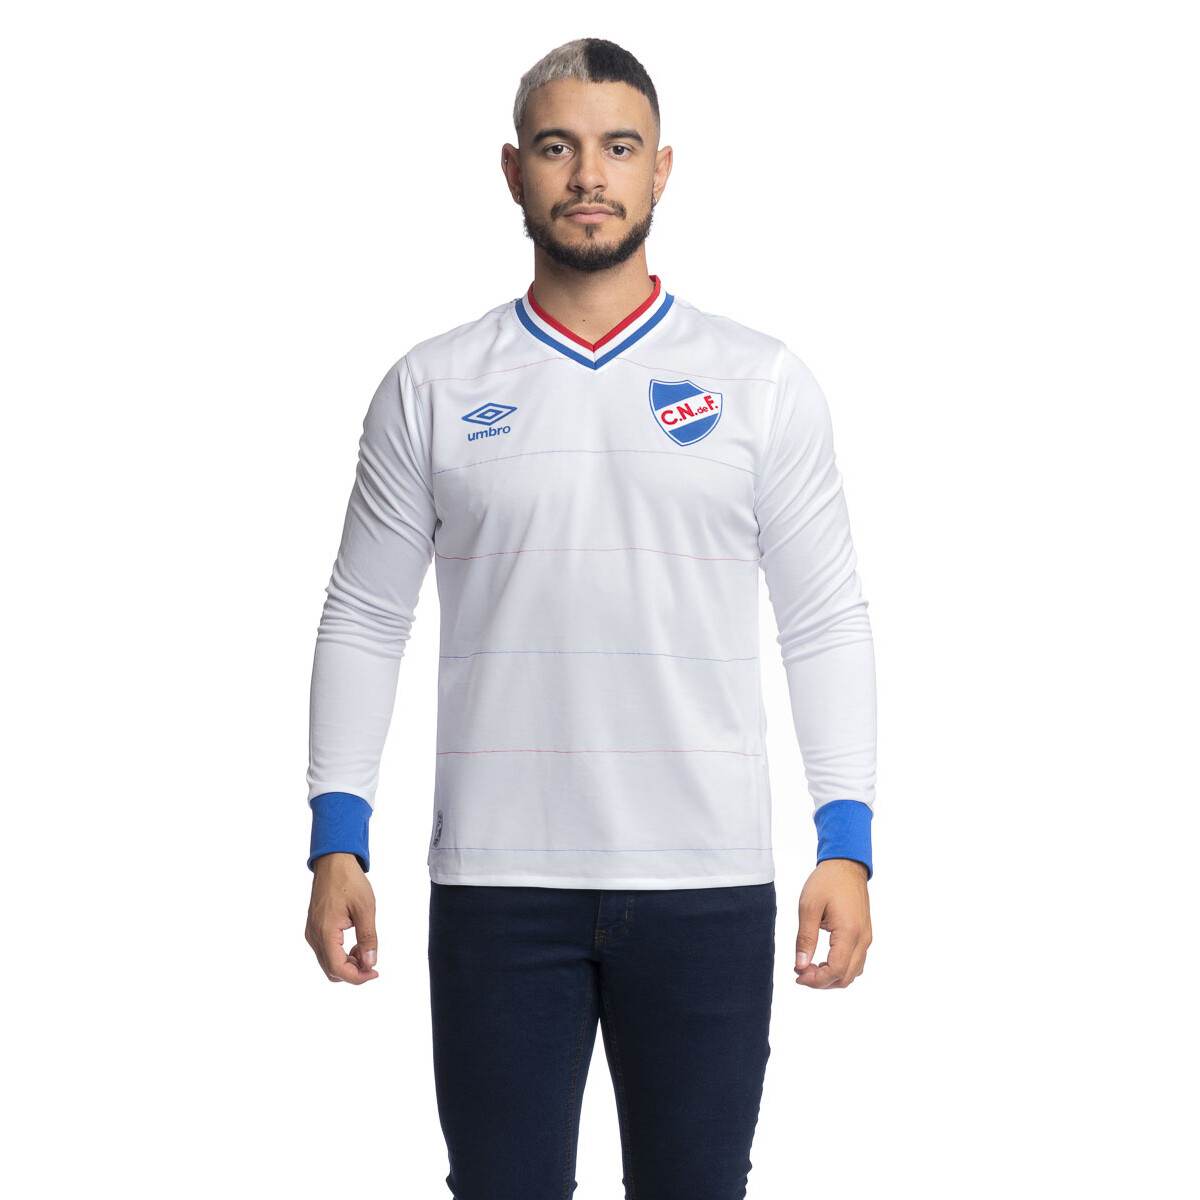 Camiseta 2016 Umbro Nacional Hombre - 0v4 